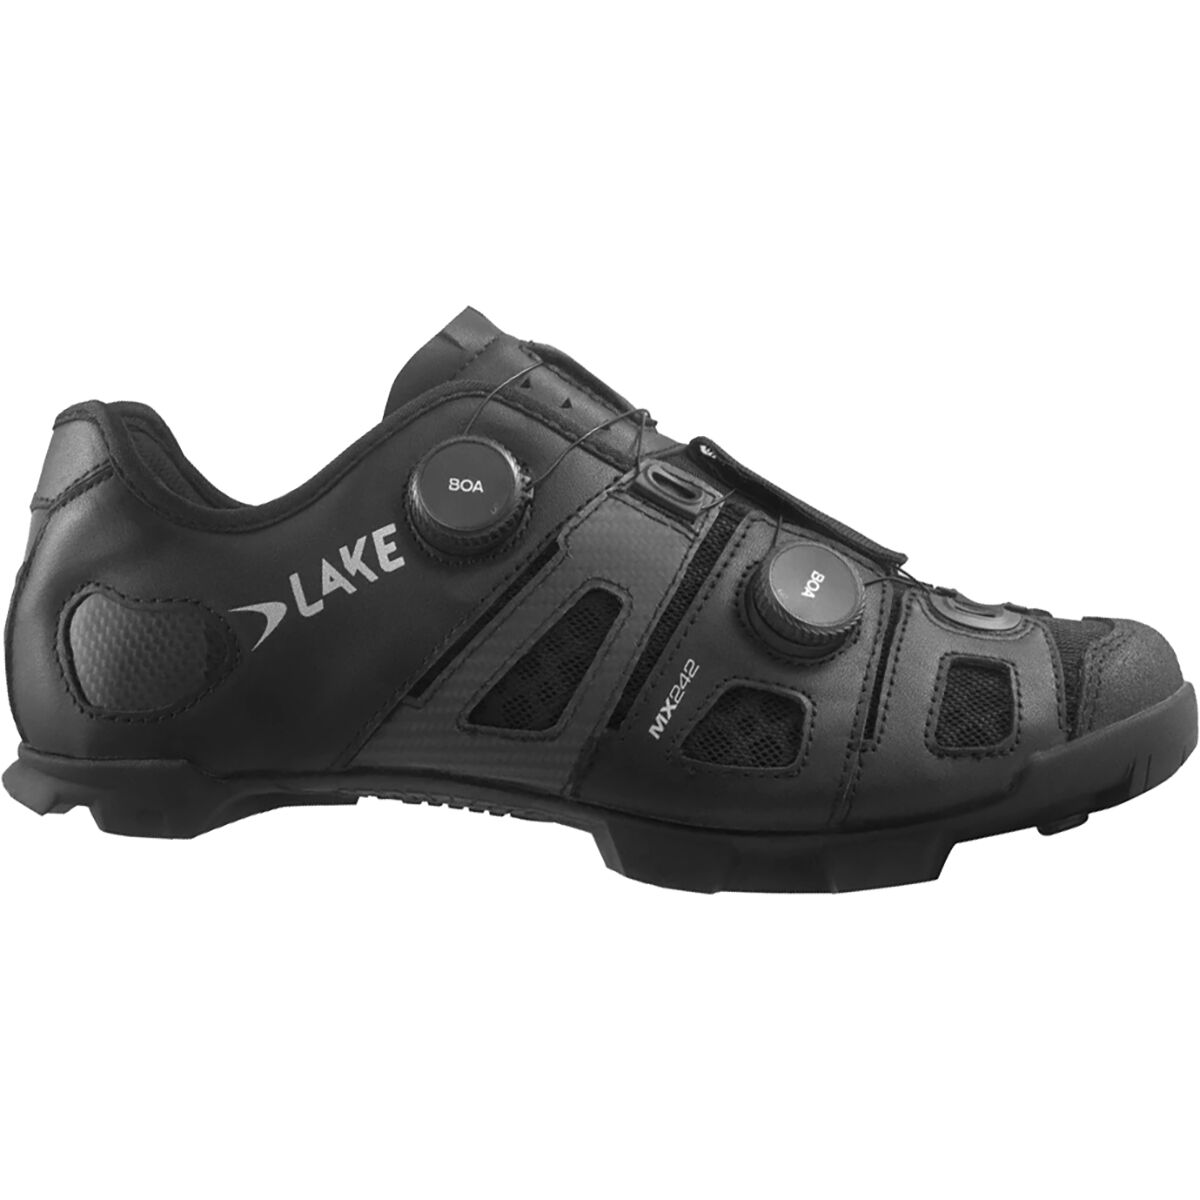 Lake MX242 Endurance Cycling Shoe - Men's Black/Silver, 43.5